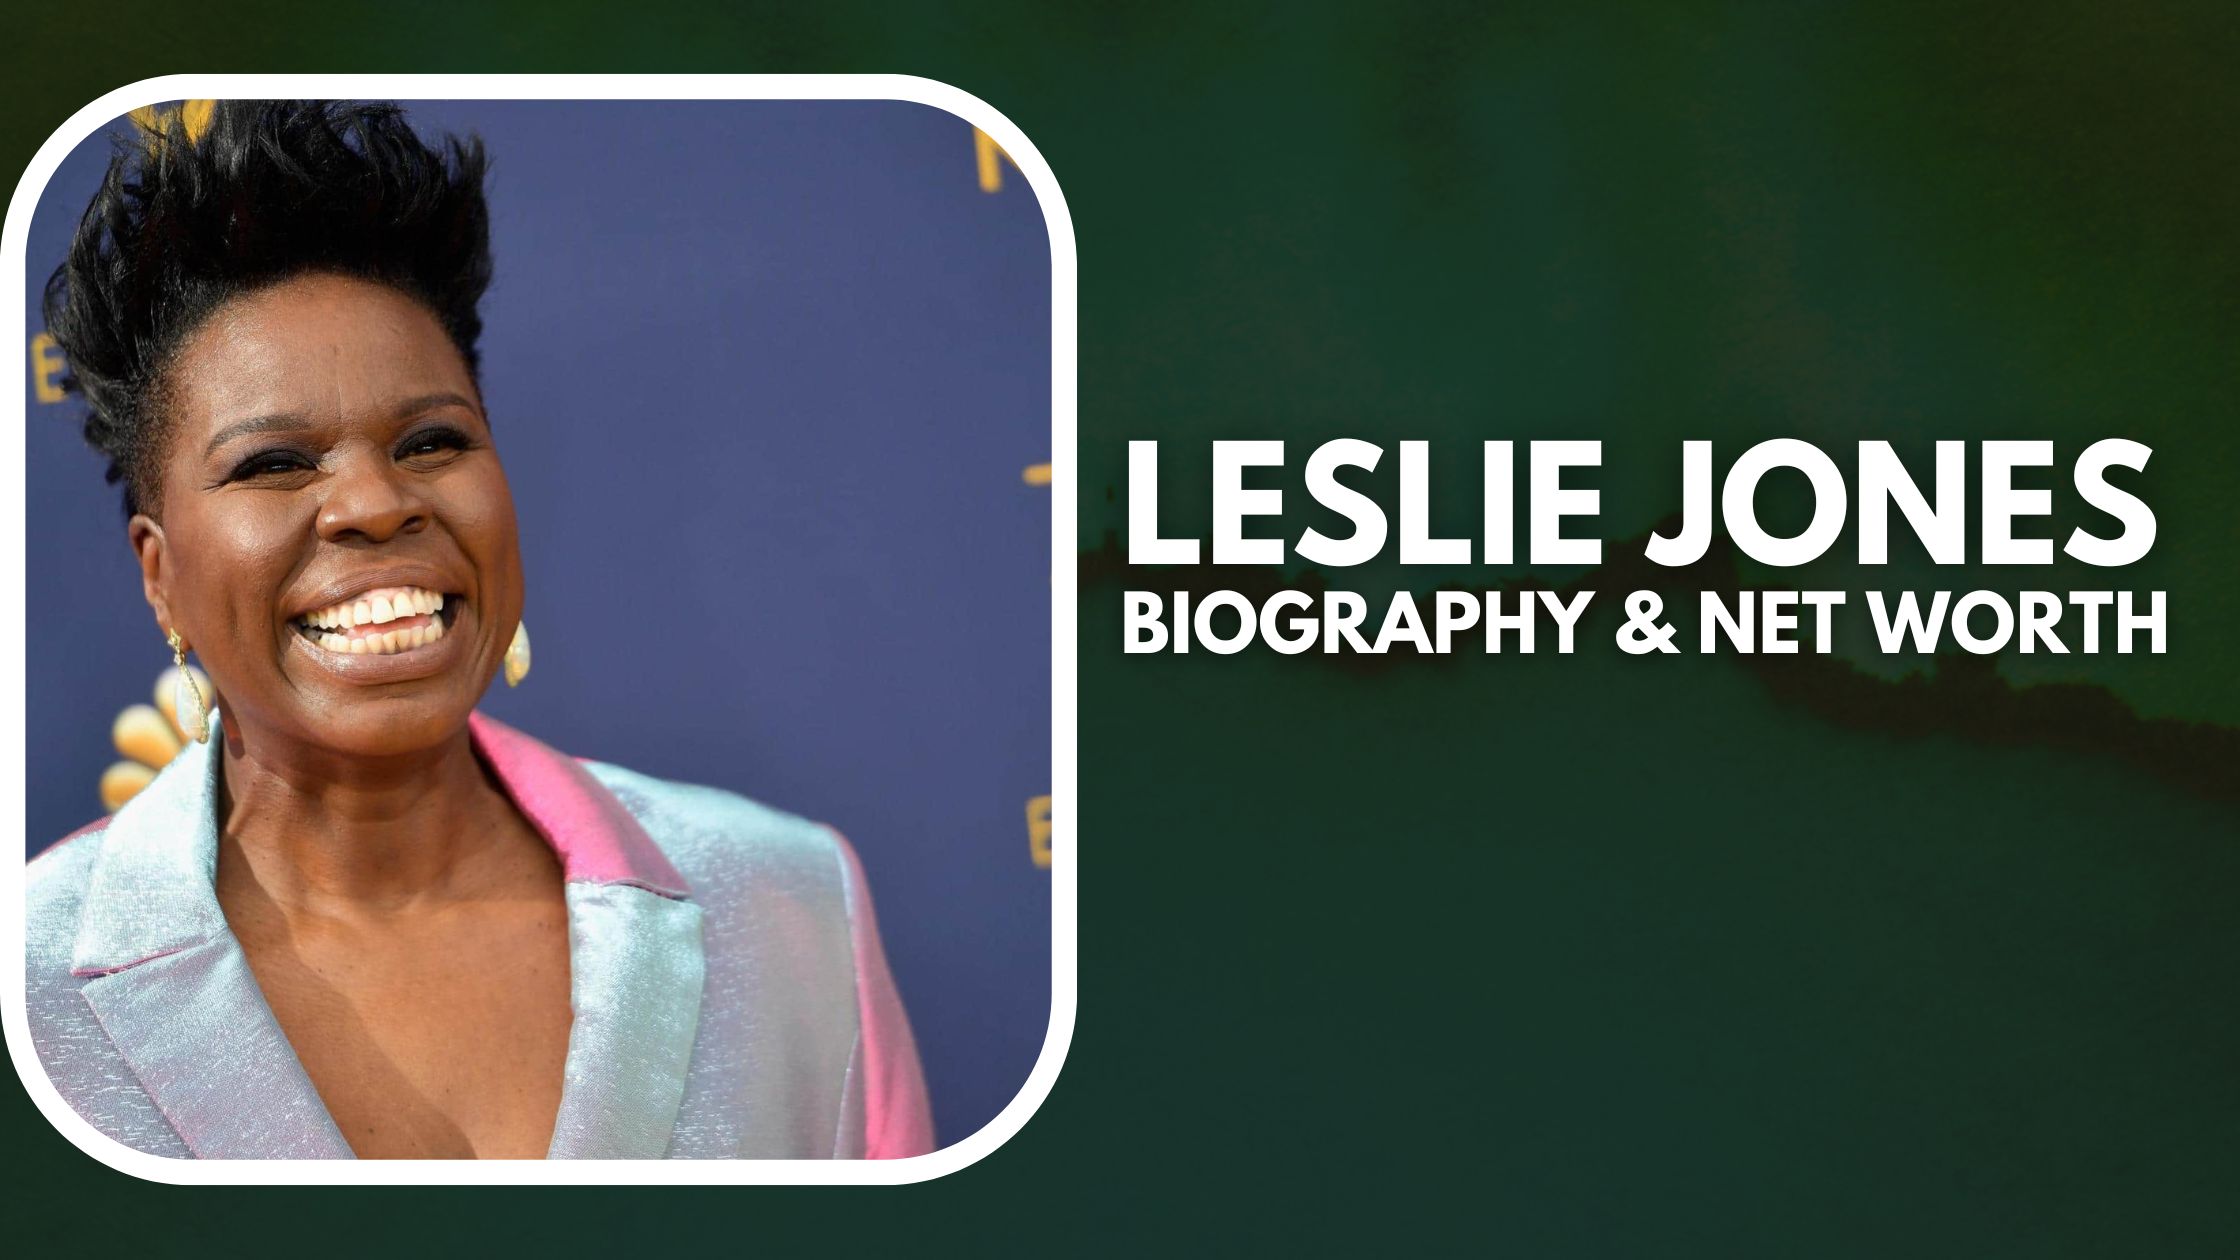 Leslie Jones biography & Net worth